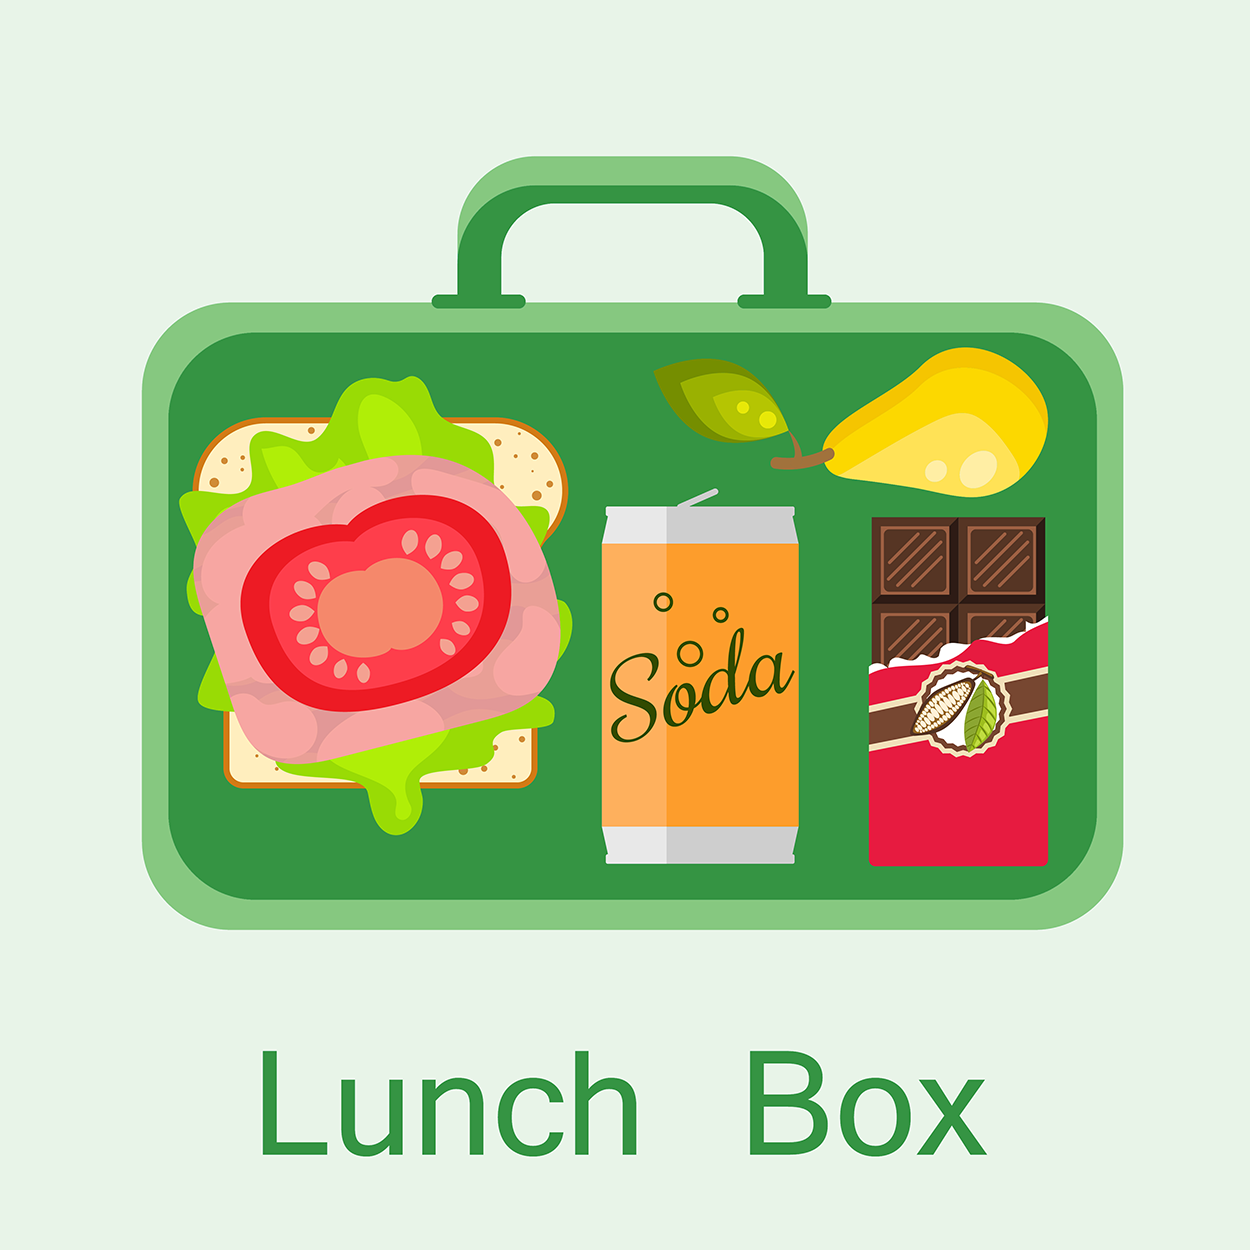 Lunch Box рисунок для детей